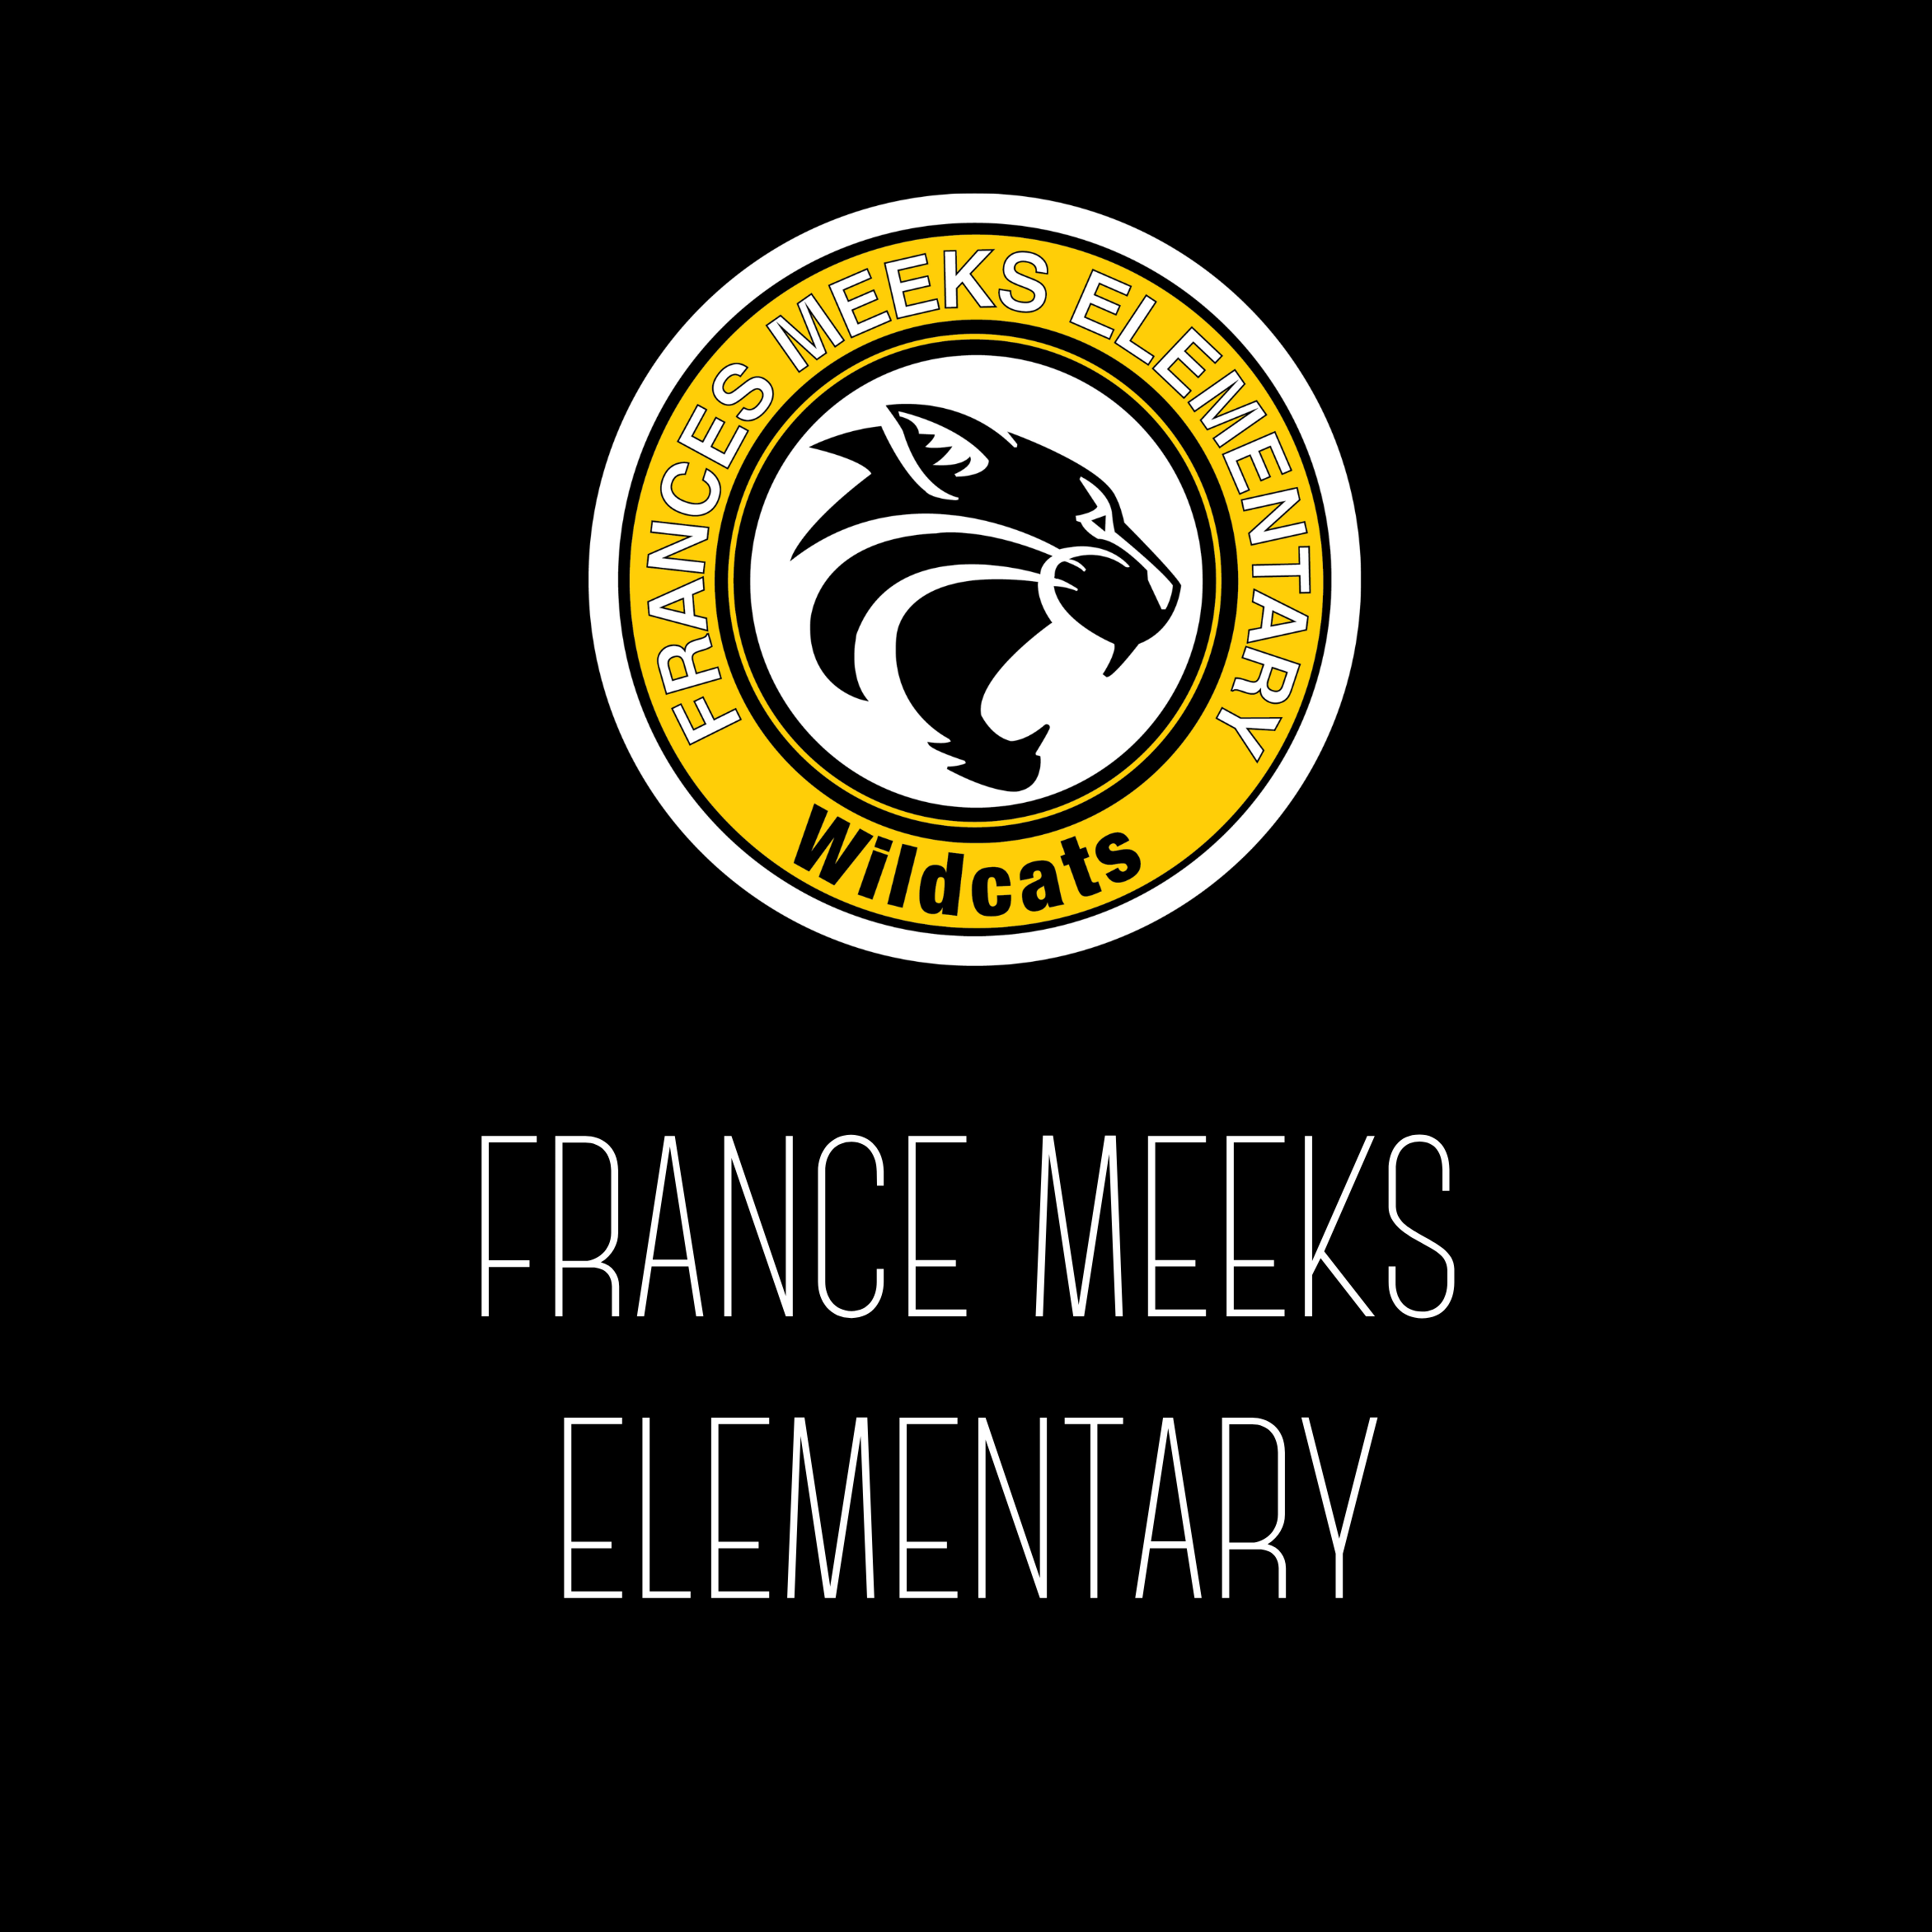 France Meeks Elementary